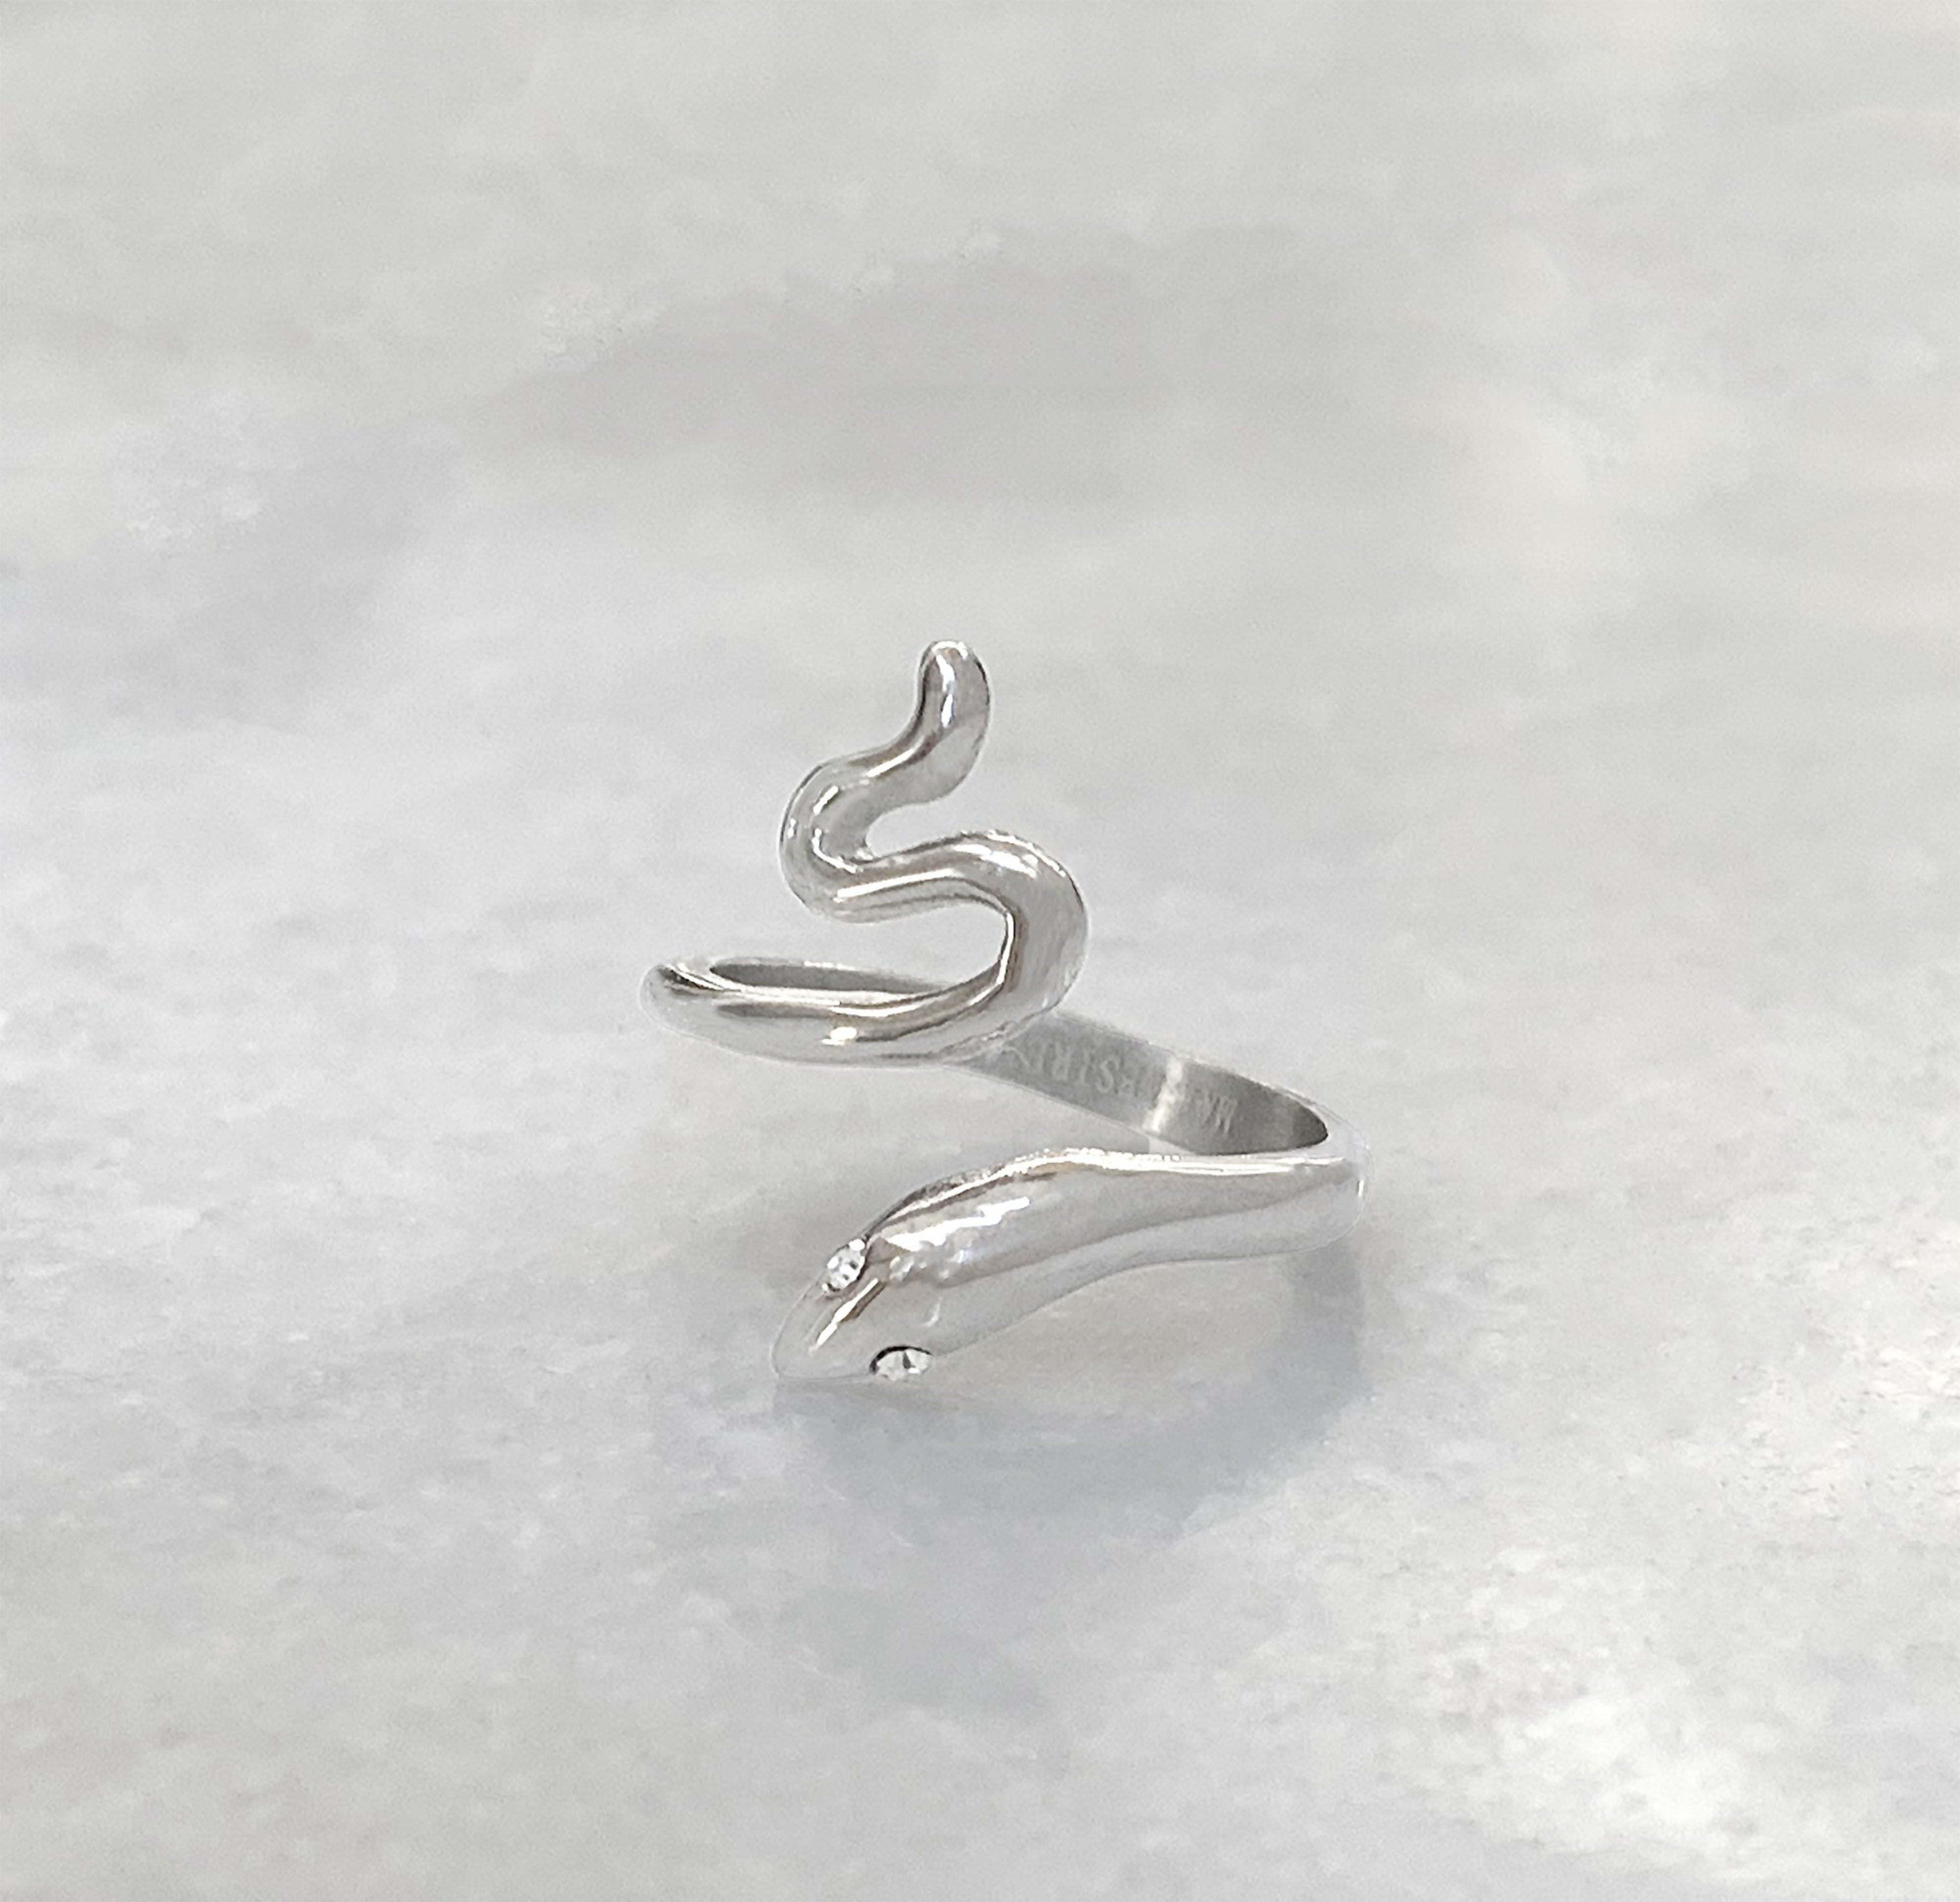 silver snake ring waterproof jewelry